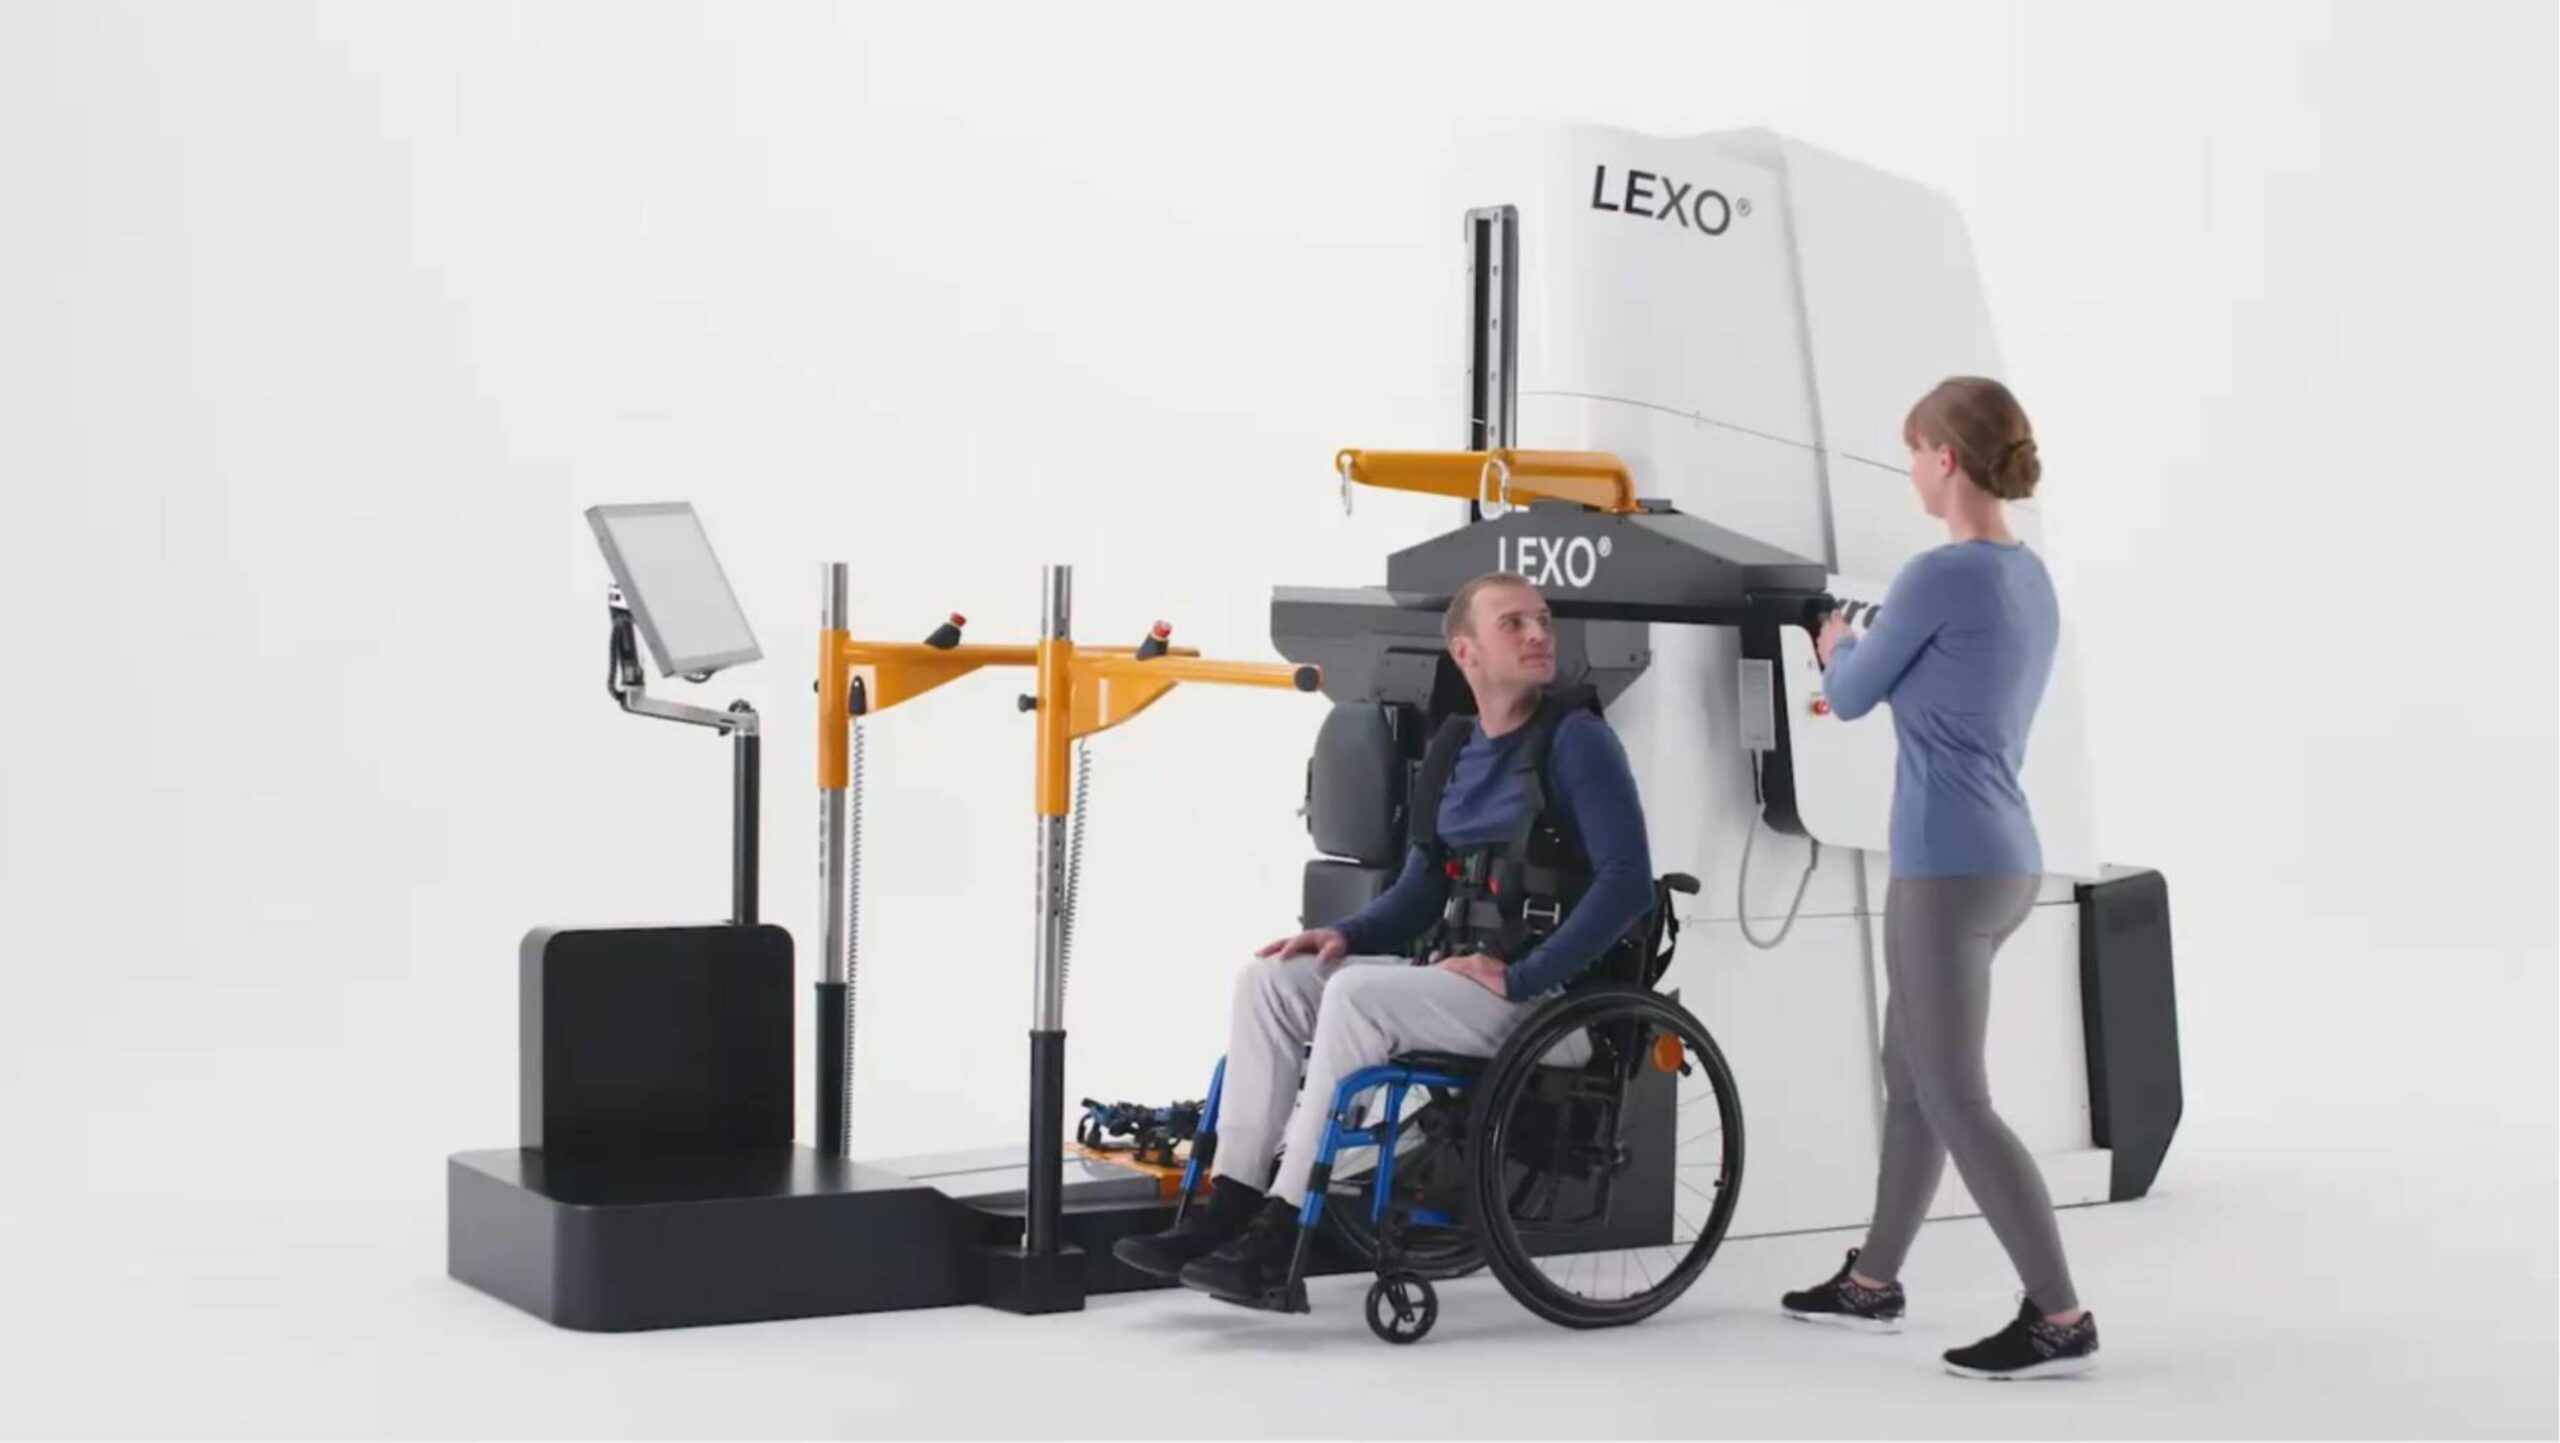 Porównanie 3 stacjonarnych robotów rehabilitacyjnych do reedukacji chodu dla prywatnych i publicznych ośrodków rehabilitacji neurologicznej. Porównanie Lokomat vs. Lexo, Lokomat vs. RoboGait, Lexo vs. RoboGait.